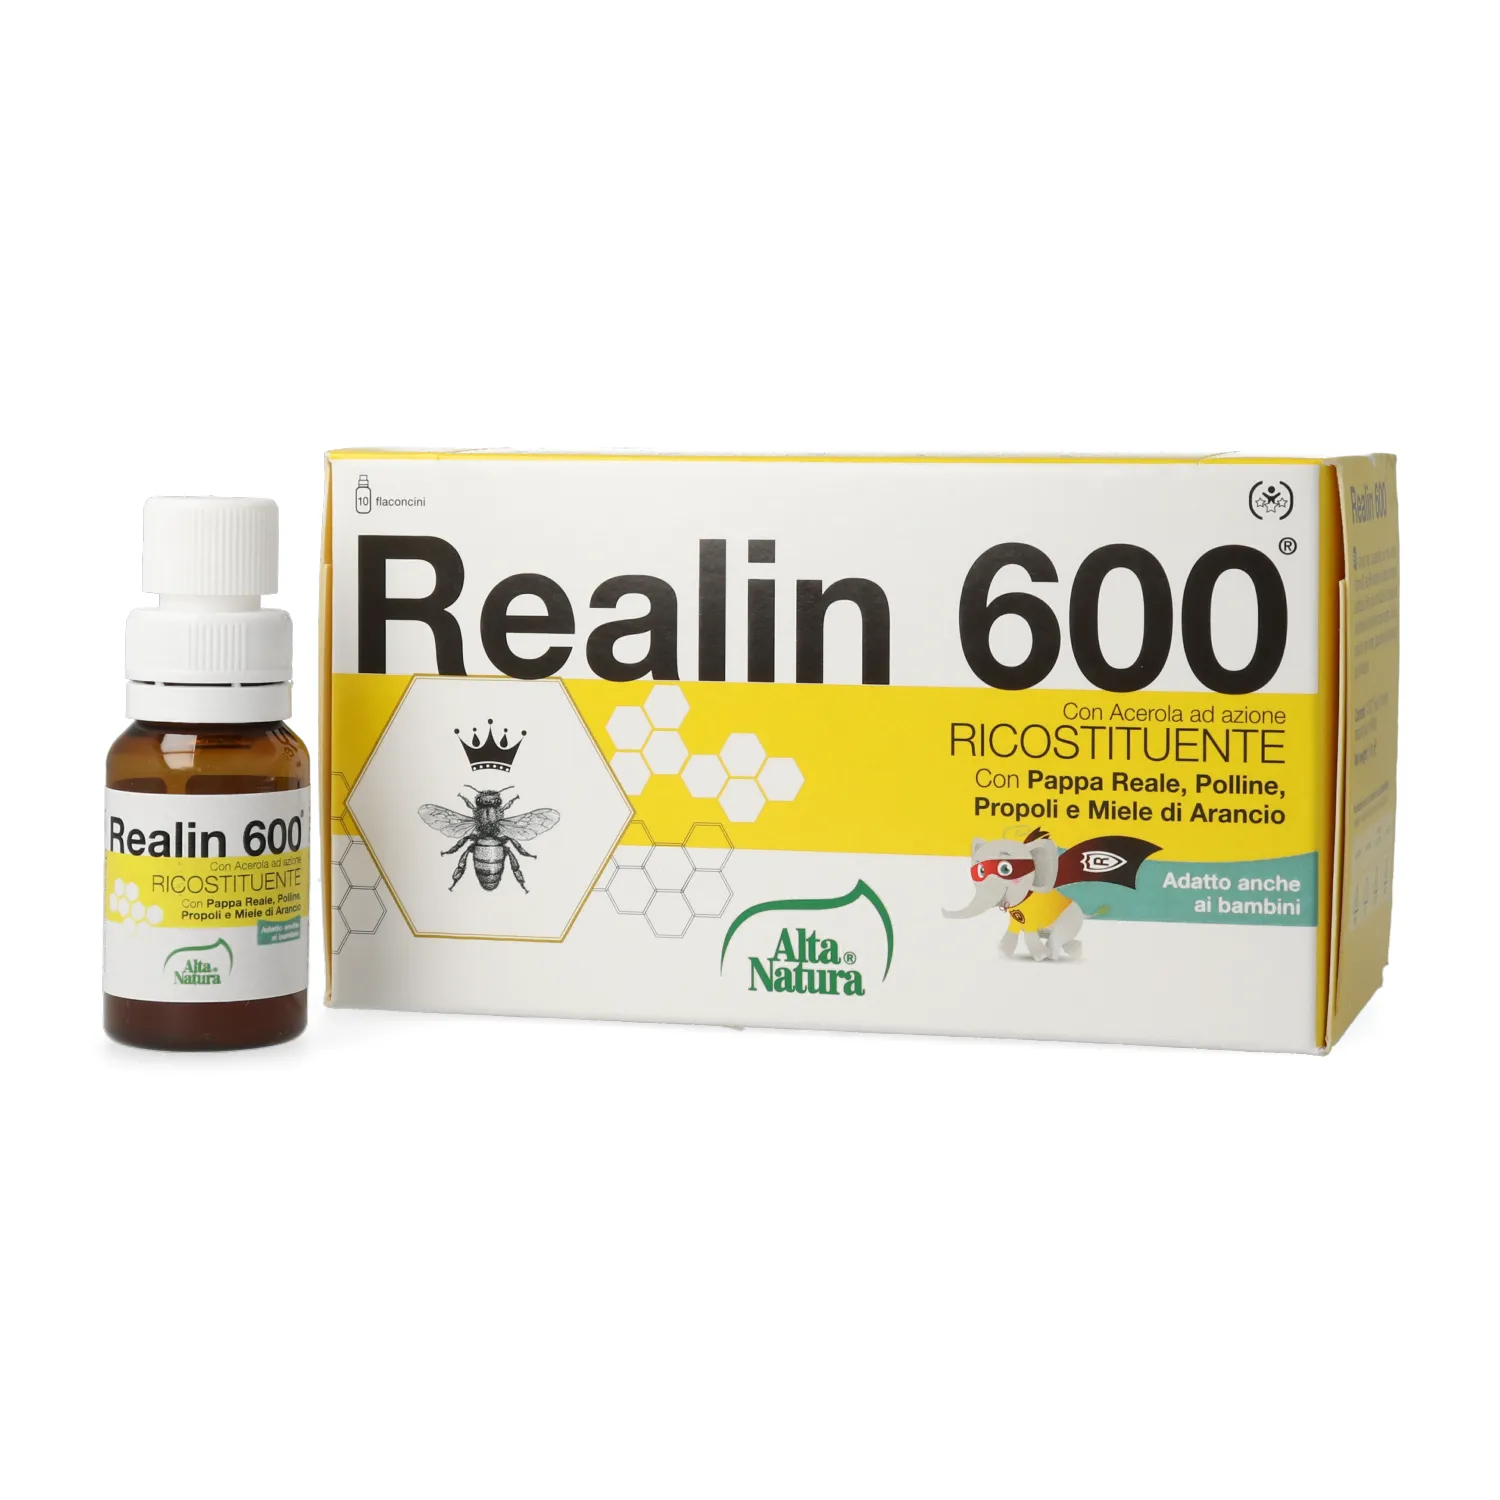 Realin 600 6Fl Da 10 ml Azione Tonica e Ricostituente